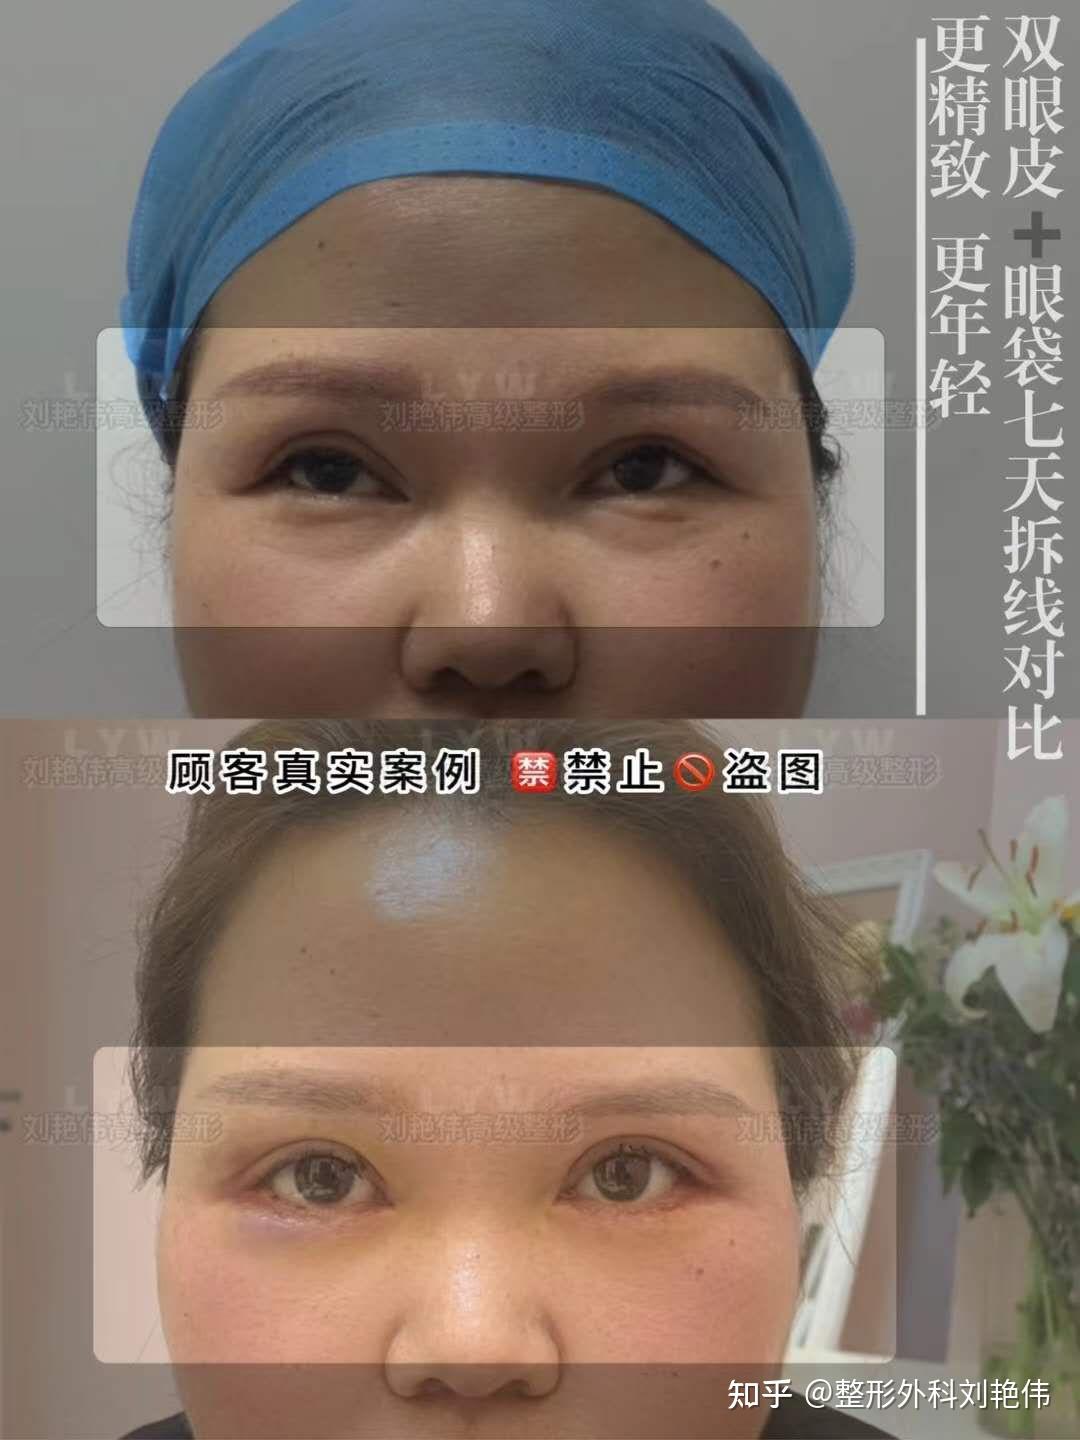 双眼皮修复、宽改窄_新氧-专业医美服务平台